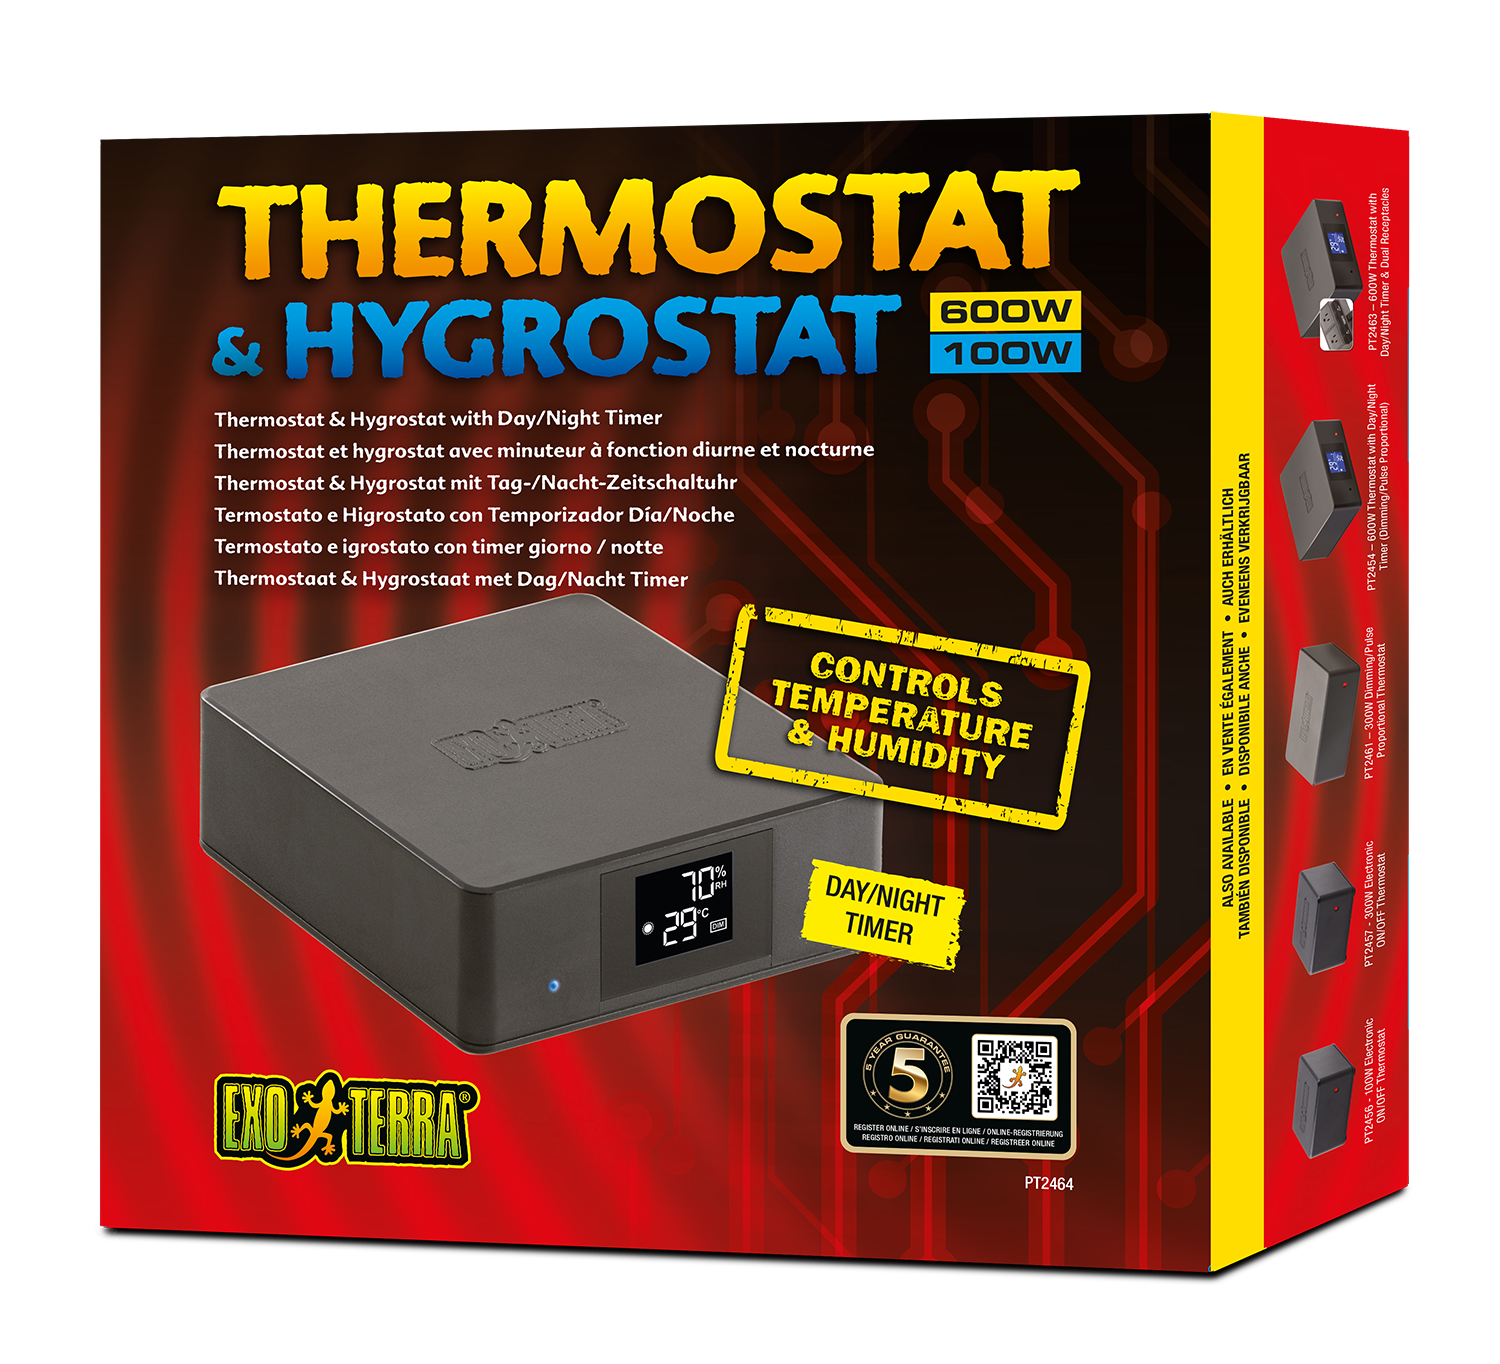 Exoterra Thermostat 600w et hygrostat 100w avec minuteur à fonction diurne et nocturne